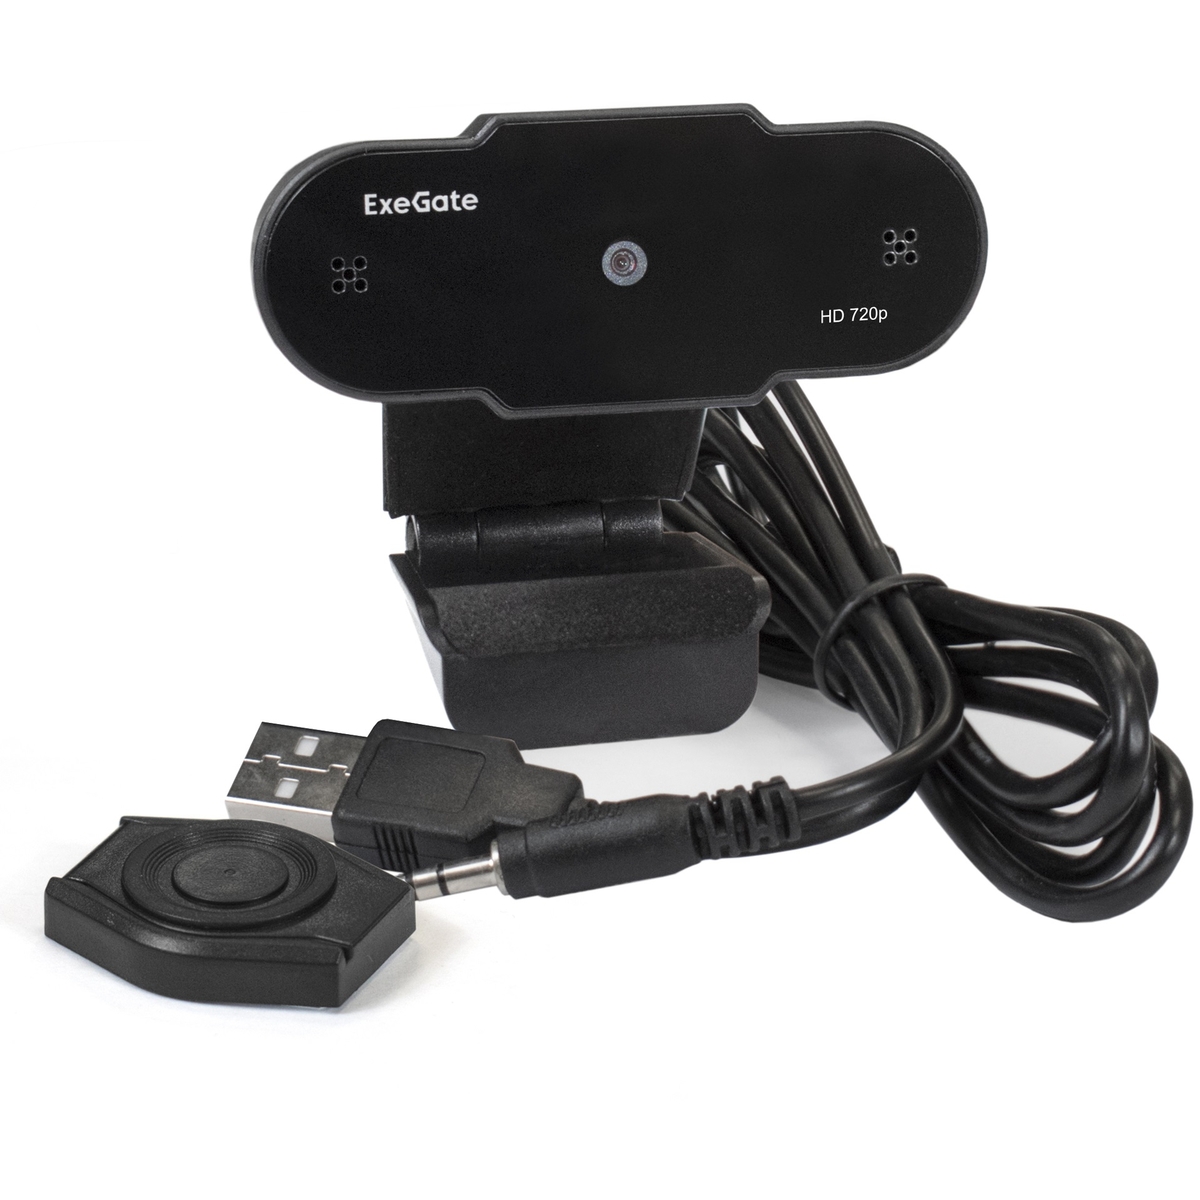 вебкамера exegate blackview c525 hd tripod 1 3mp 1280x720 встроенный микрофон usb 2 0 черный ex287386rus Веб-камера ExeGate BlackView C525 HD Tripod (EX287386RUS)